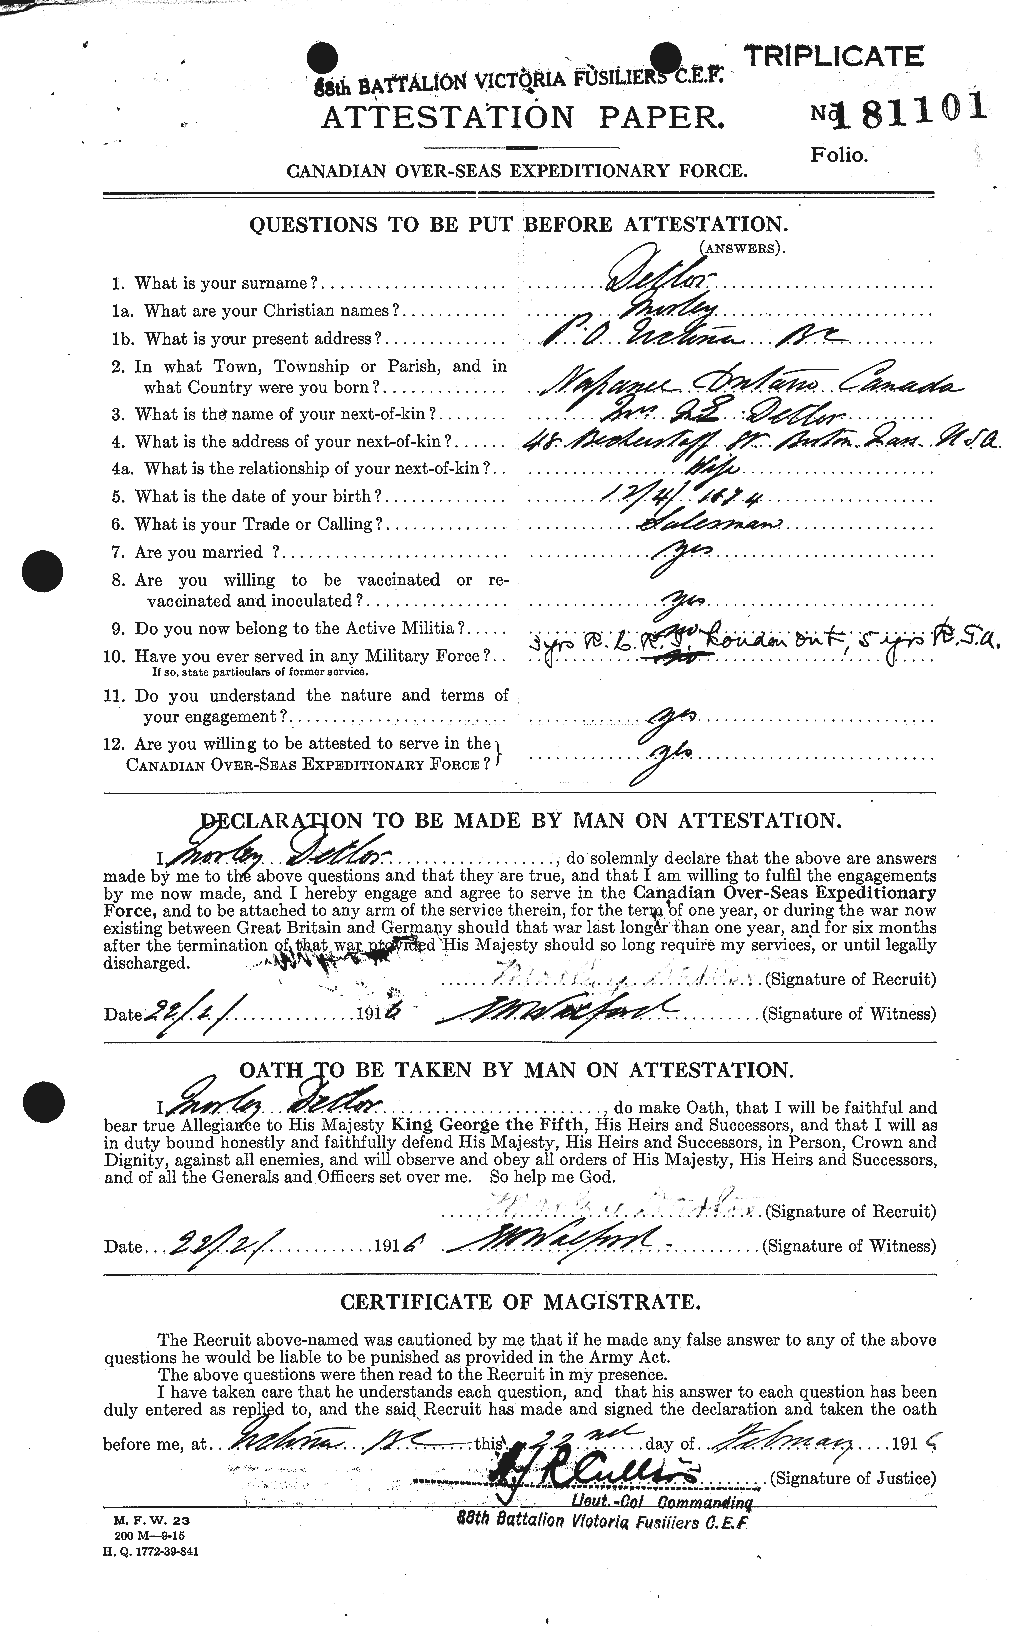 Dossiers du Personnel de la Première Guerre mondiale - CEC 289450a